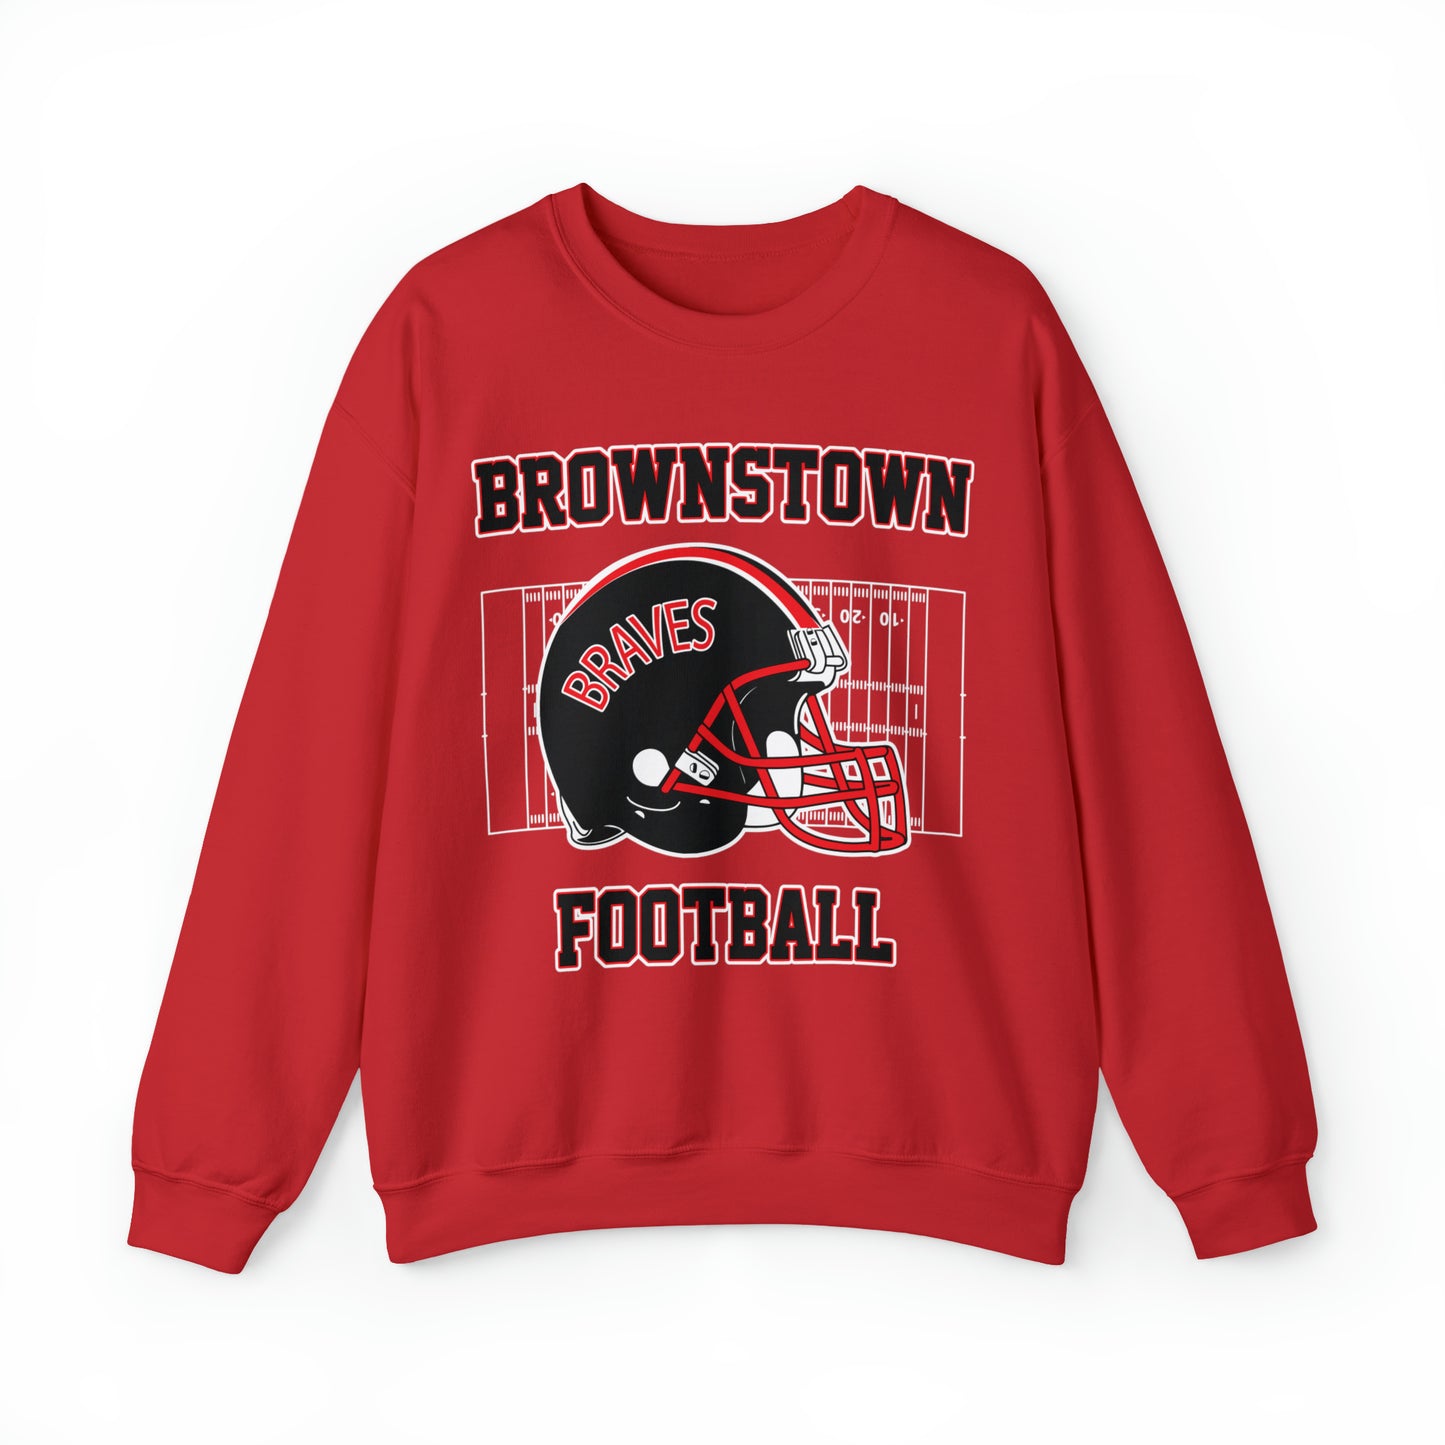 Brownstown Braves Football Crewneck Sweatshirt